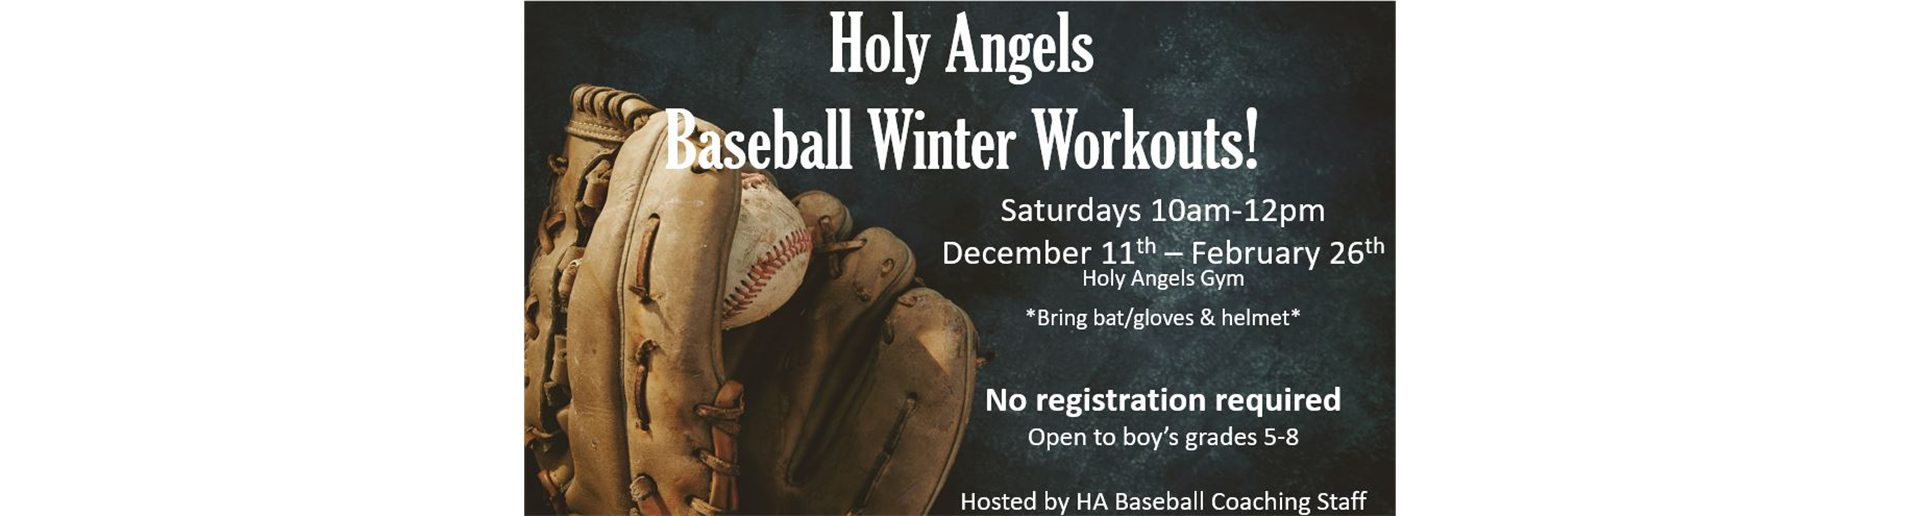 Baseball Winter Workouts begin December 11